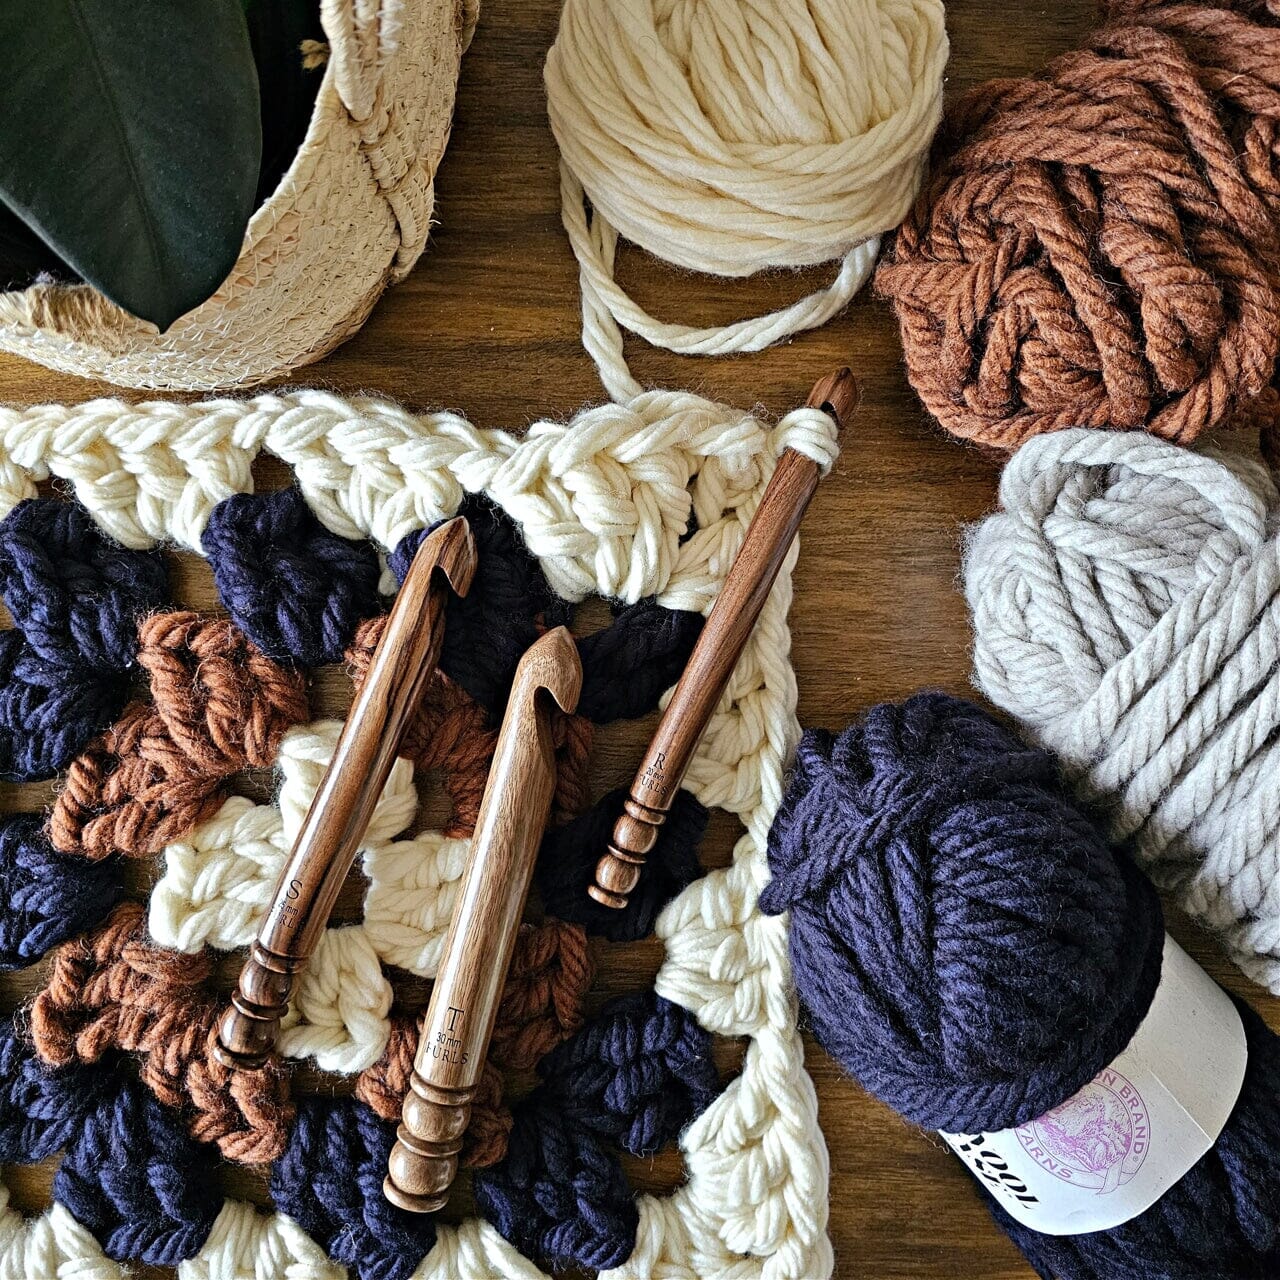 Bryspun and Laurel Hill Wood Crochet Hooks Palmwood J